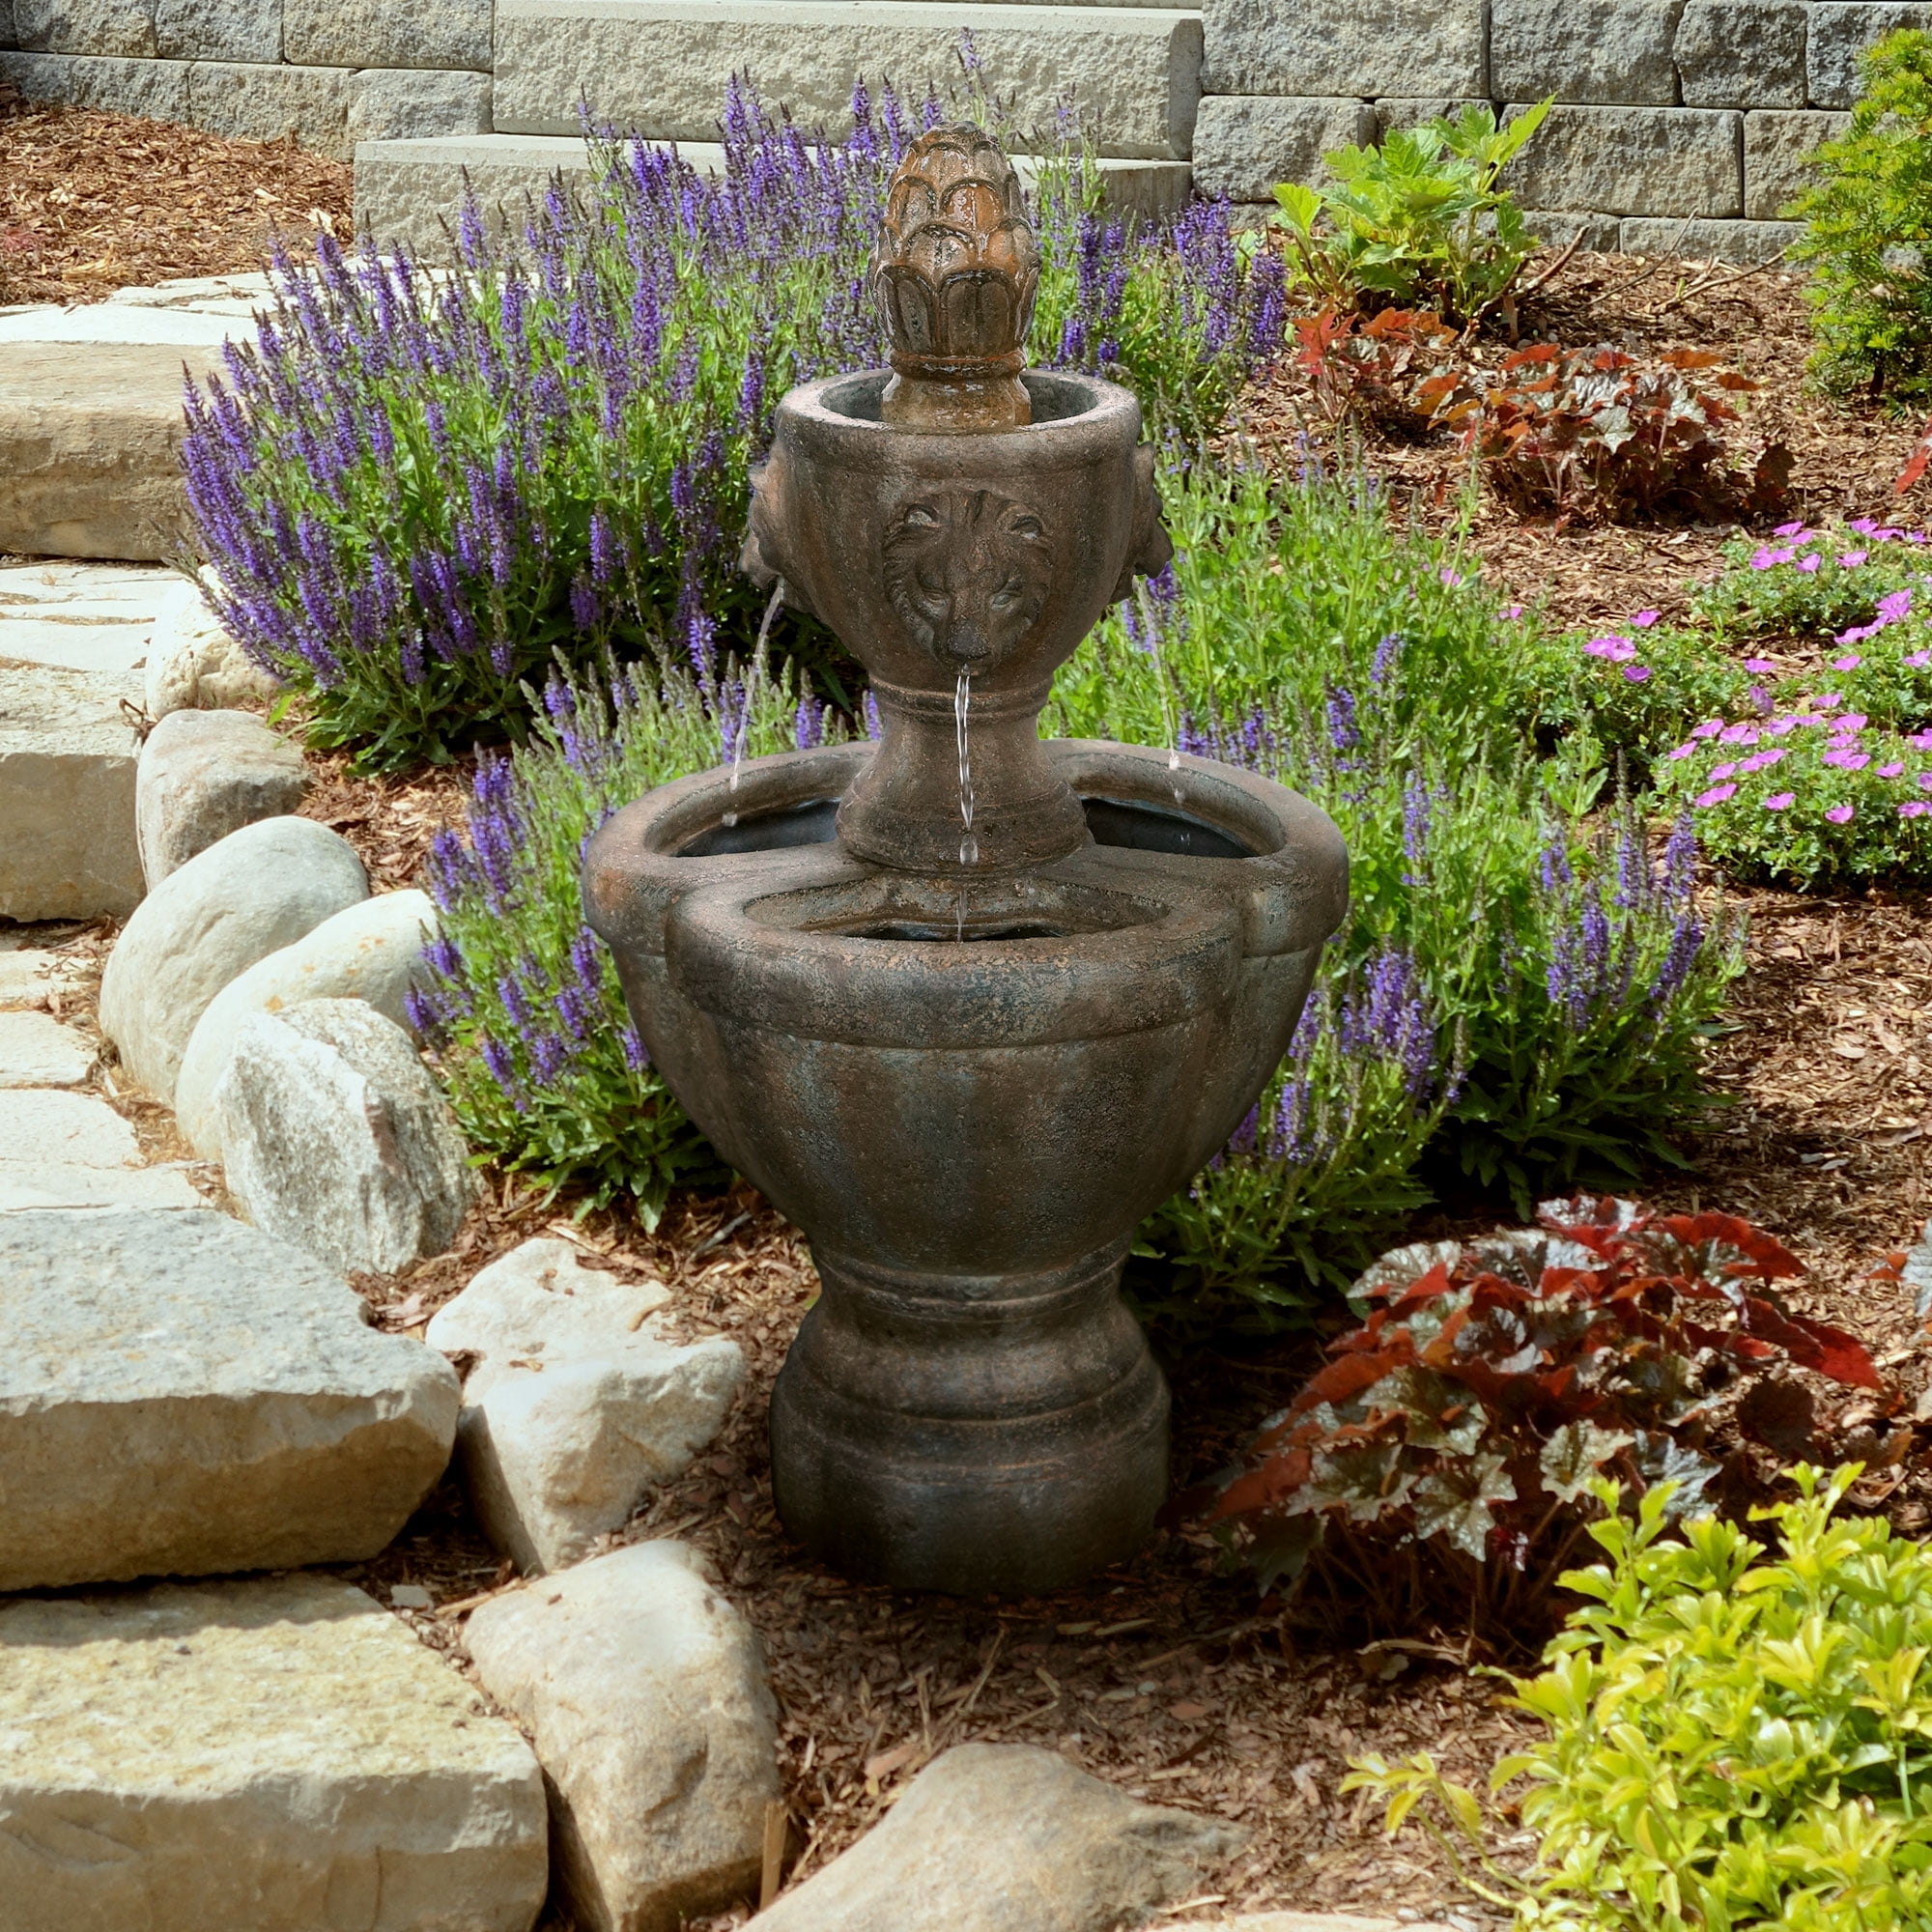 Outdoor Water Fountain Solar 4 Tier Resin Modern Zen Decor Garden Patio Backyard 